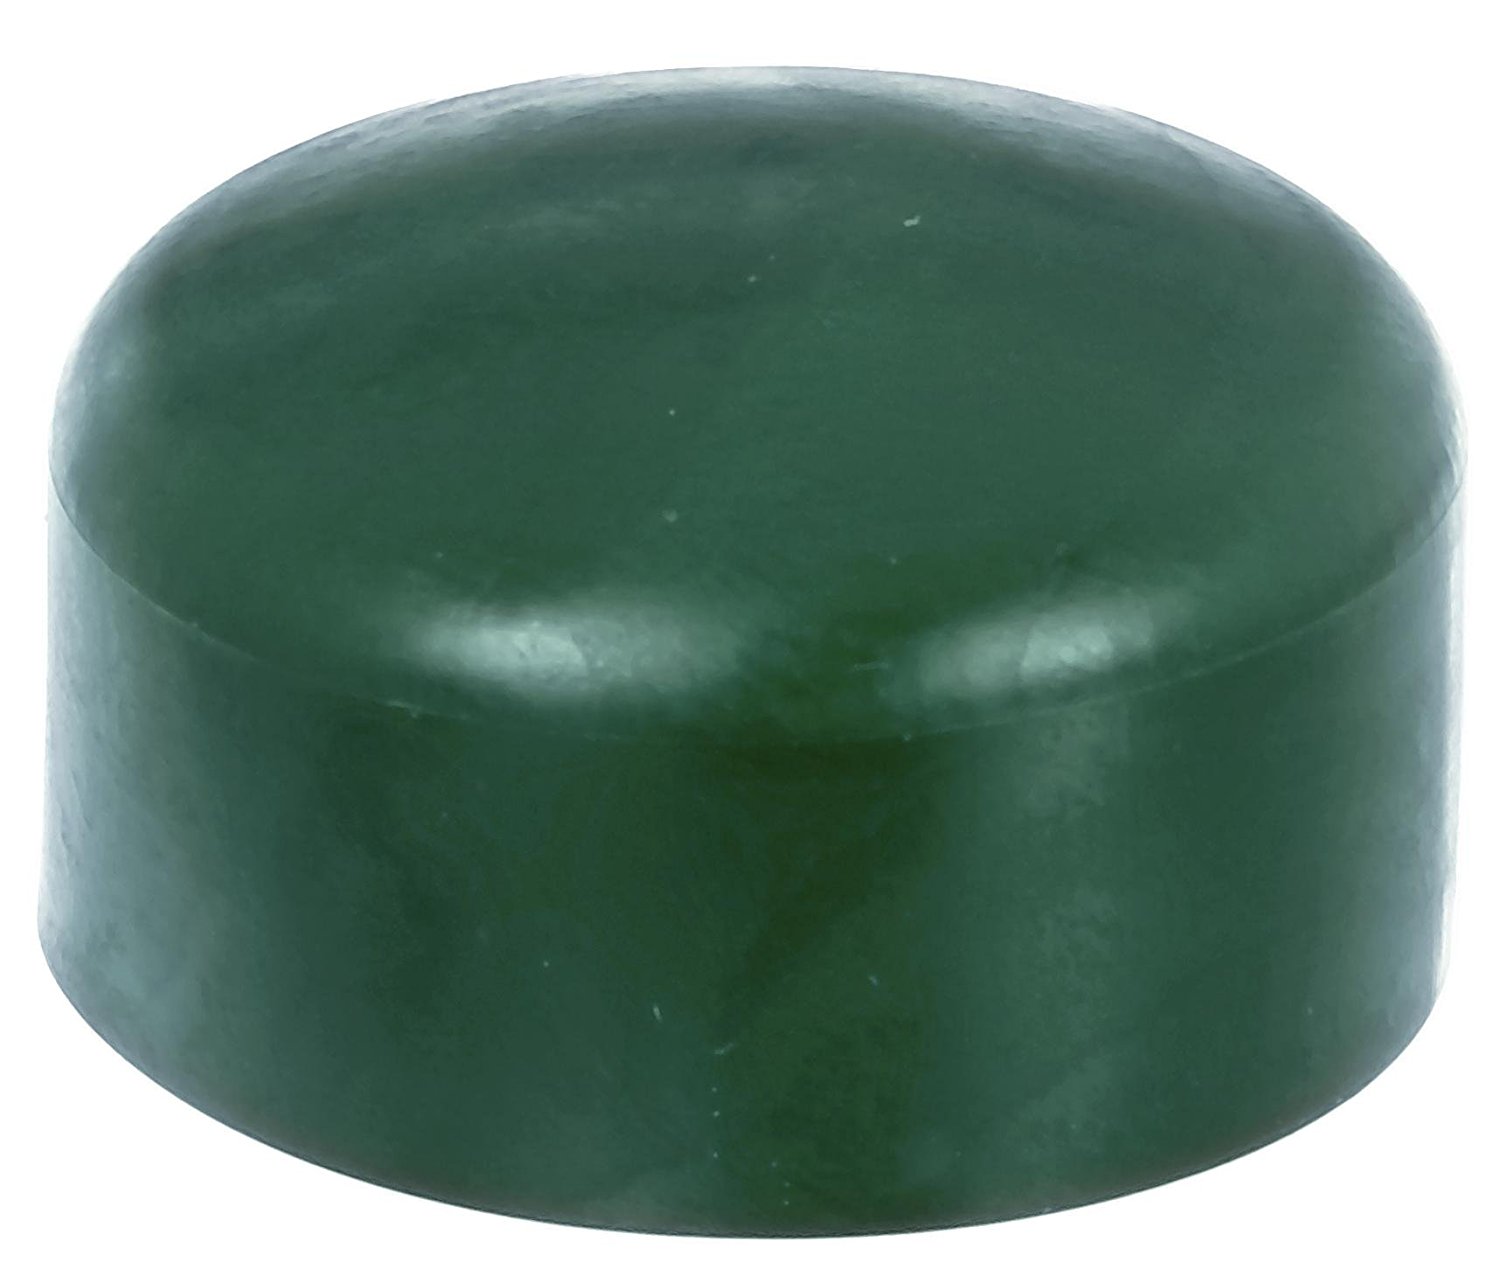 4 x Zaunkappe grün 43-44 mm, Pfostenkappe für runde Metallpfosten, grün, Rohrkappen, Abdeckkappe für